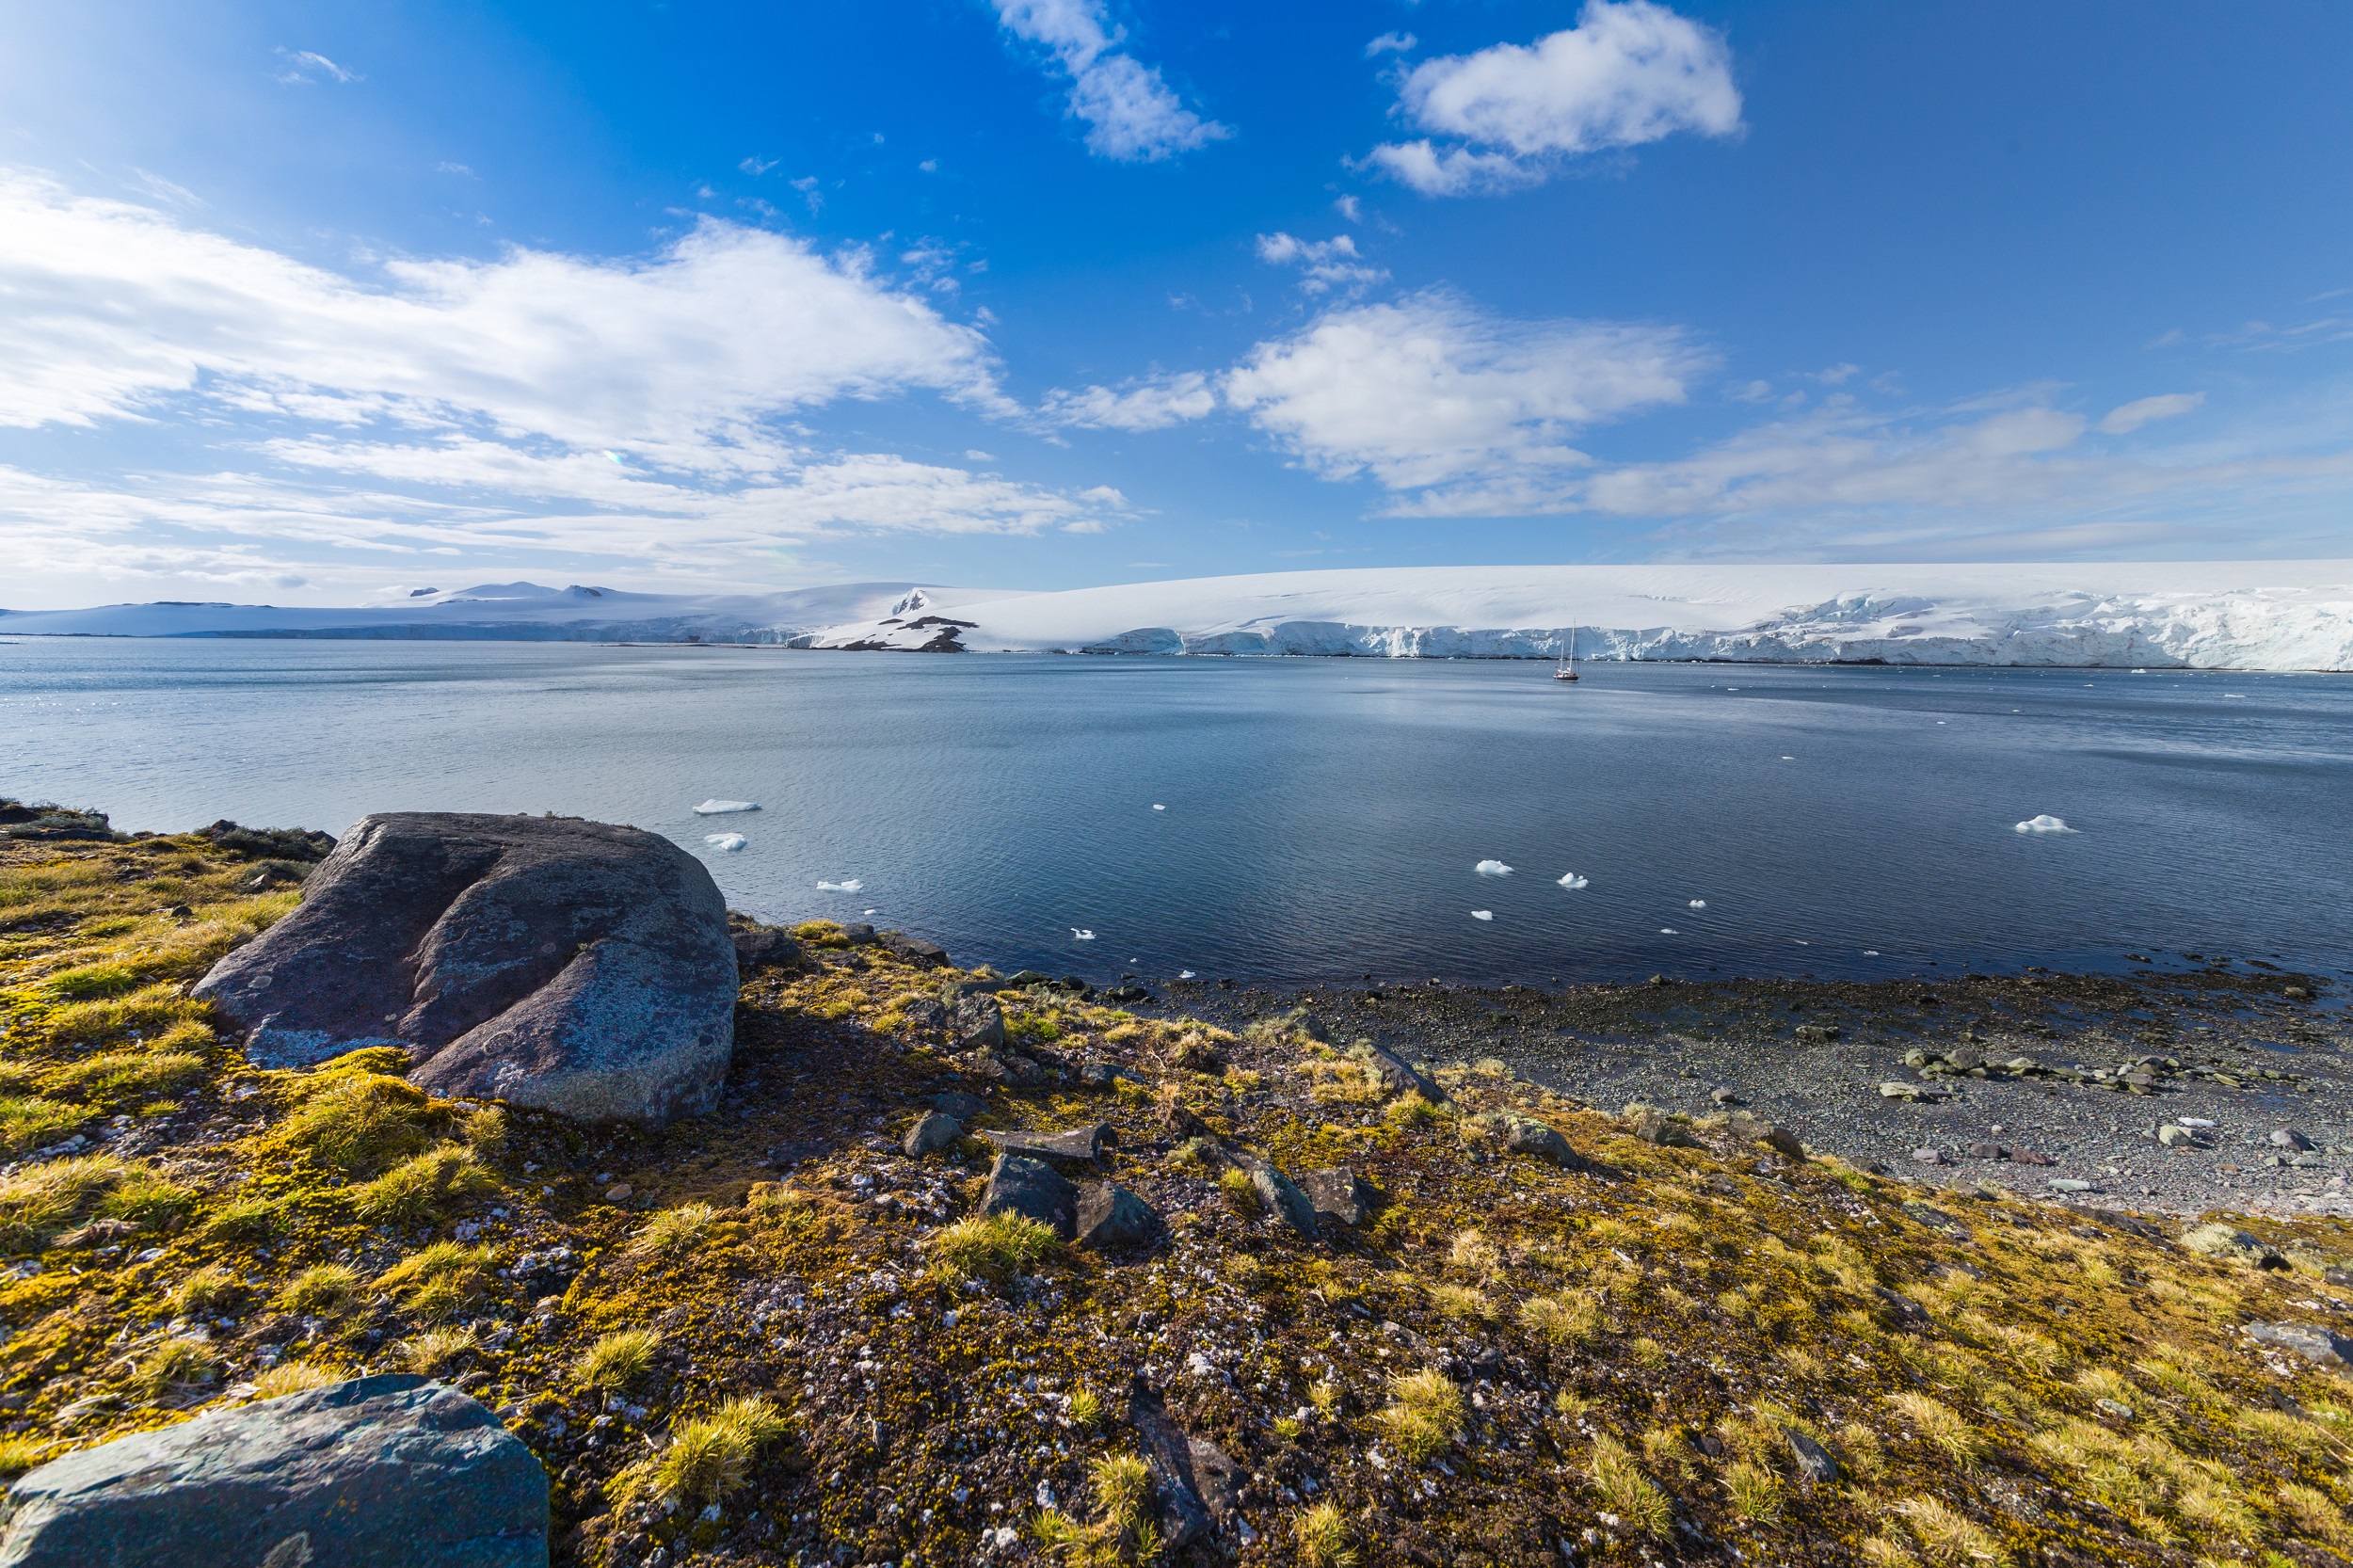 La hausse des températures permet à la végétation de se propager en Antarctique. © Viktoria, Adobe Stock